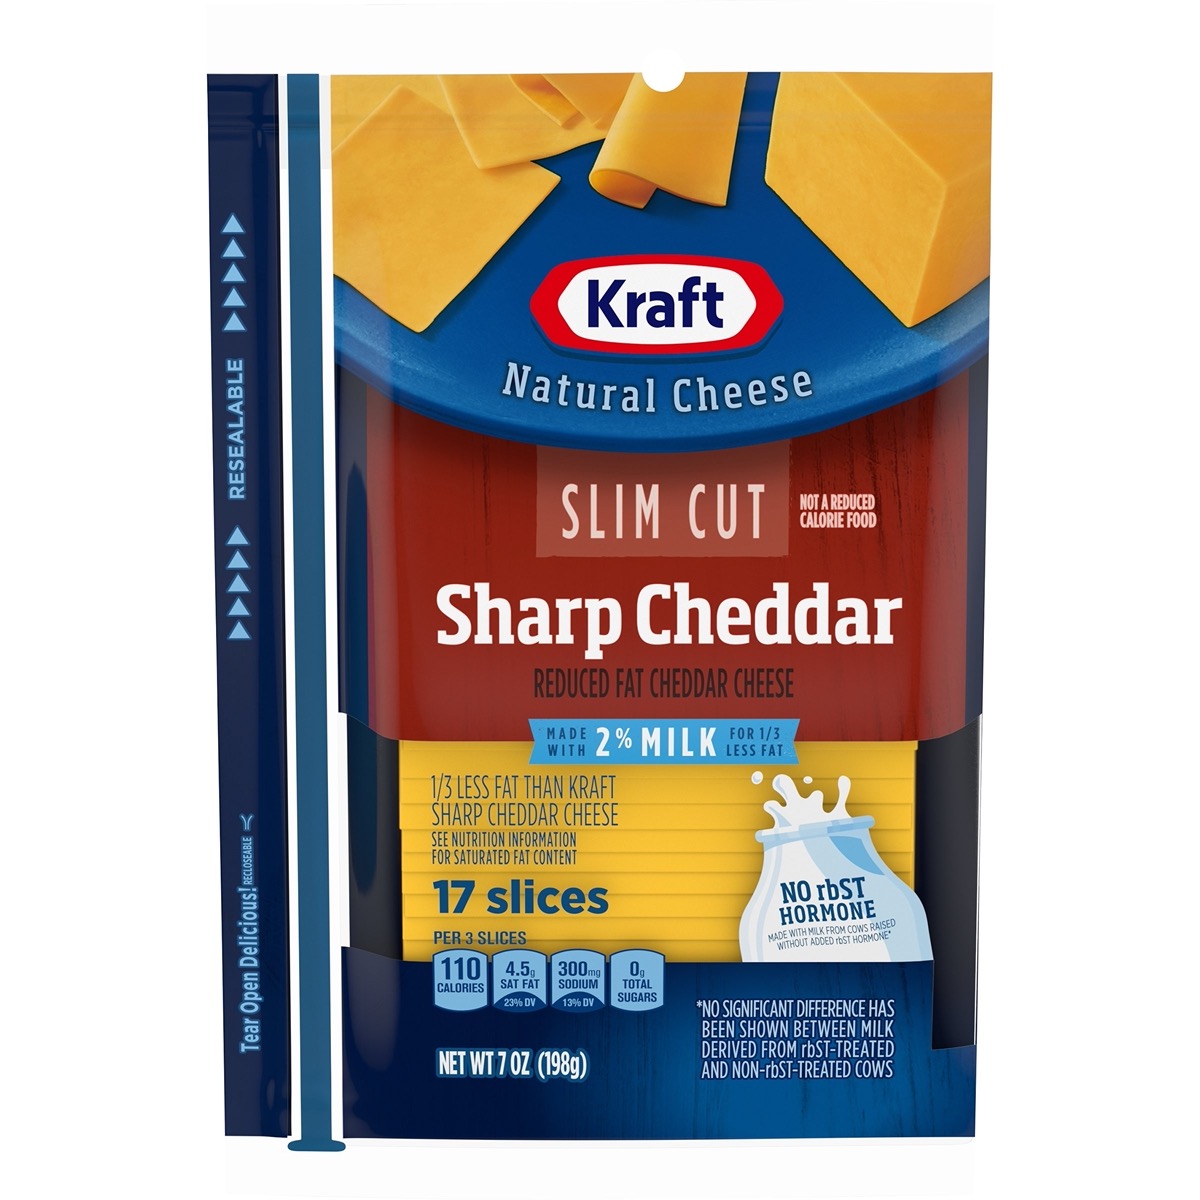 Slim Cut Sharp Cheddar (2% Milk)